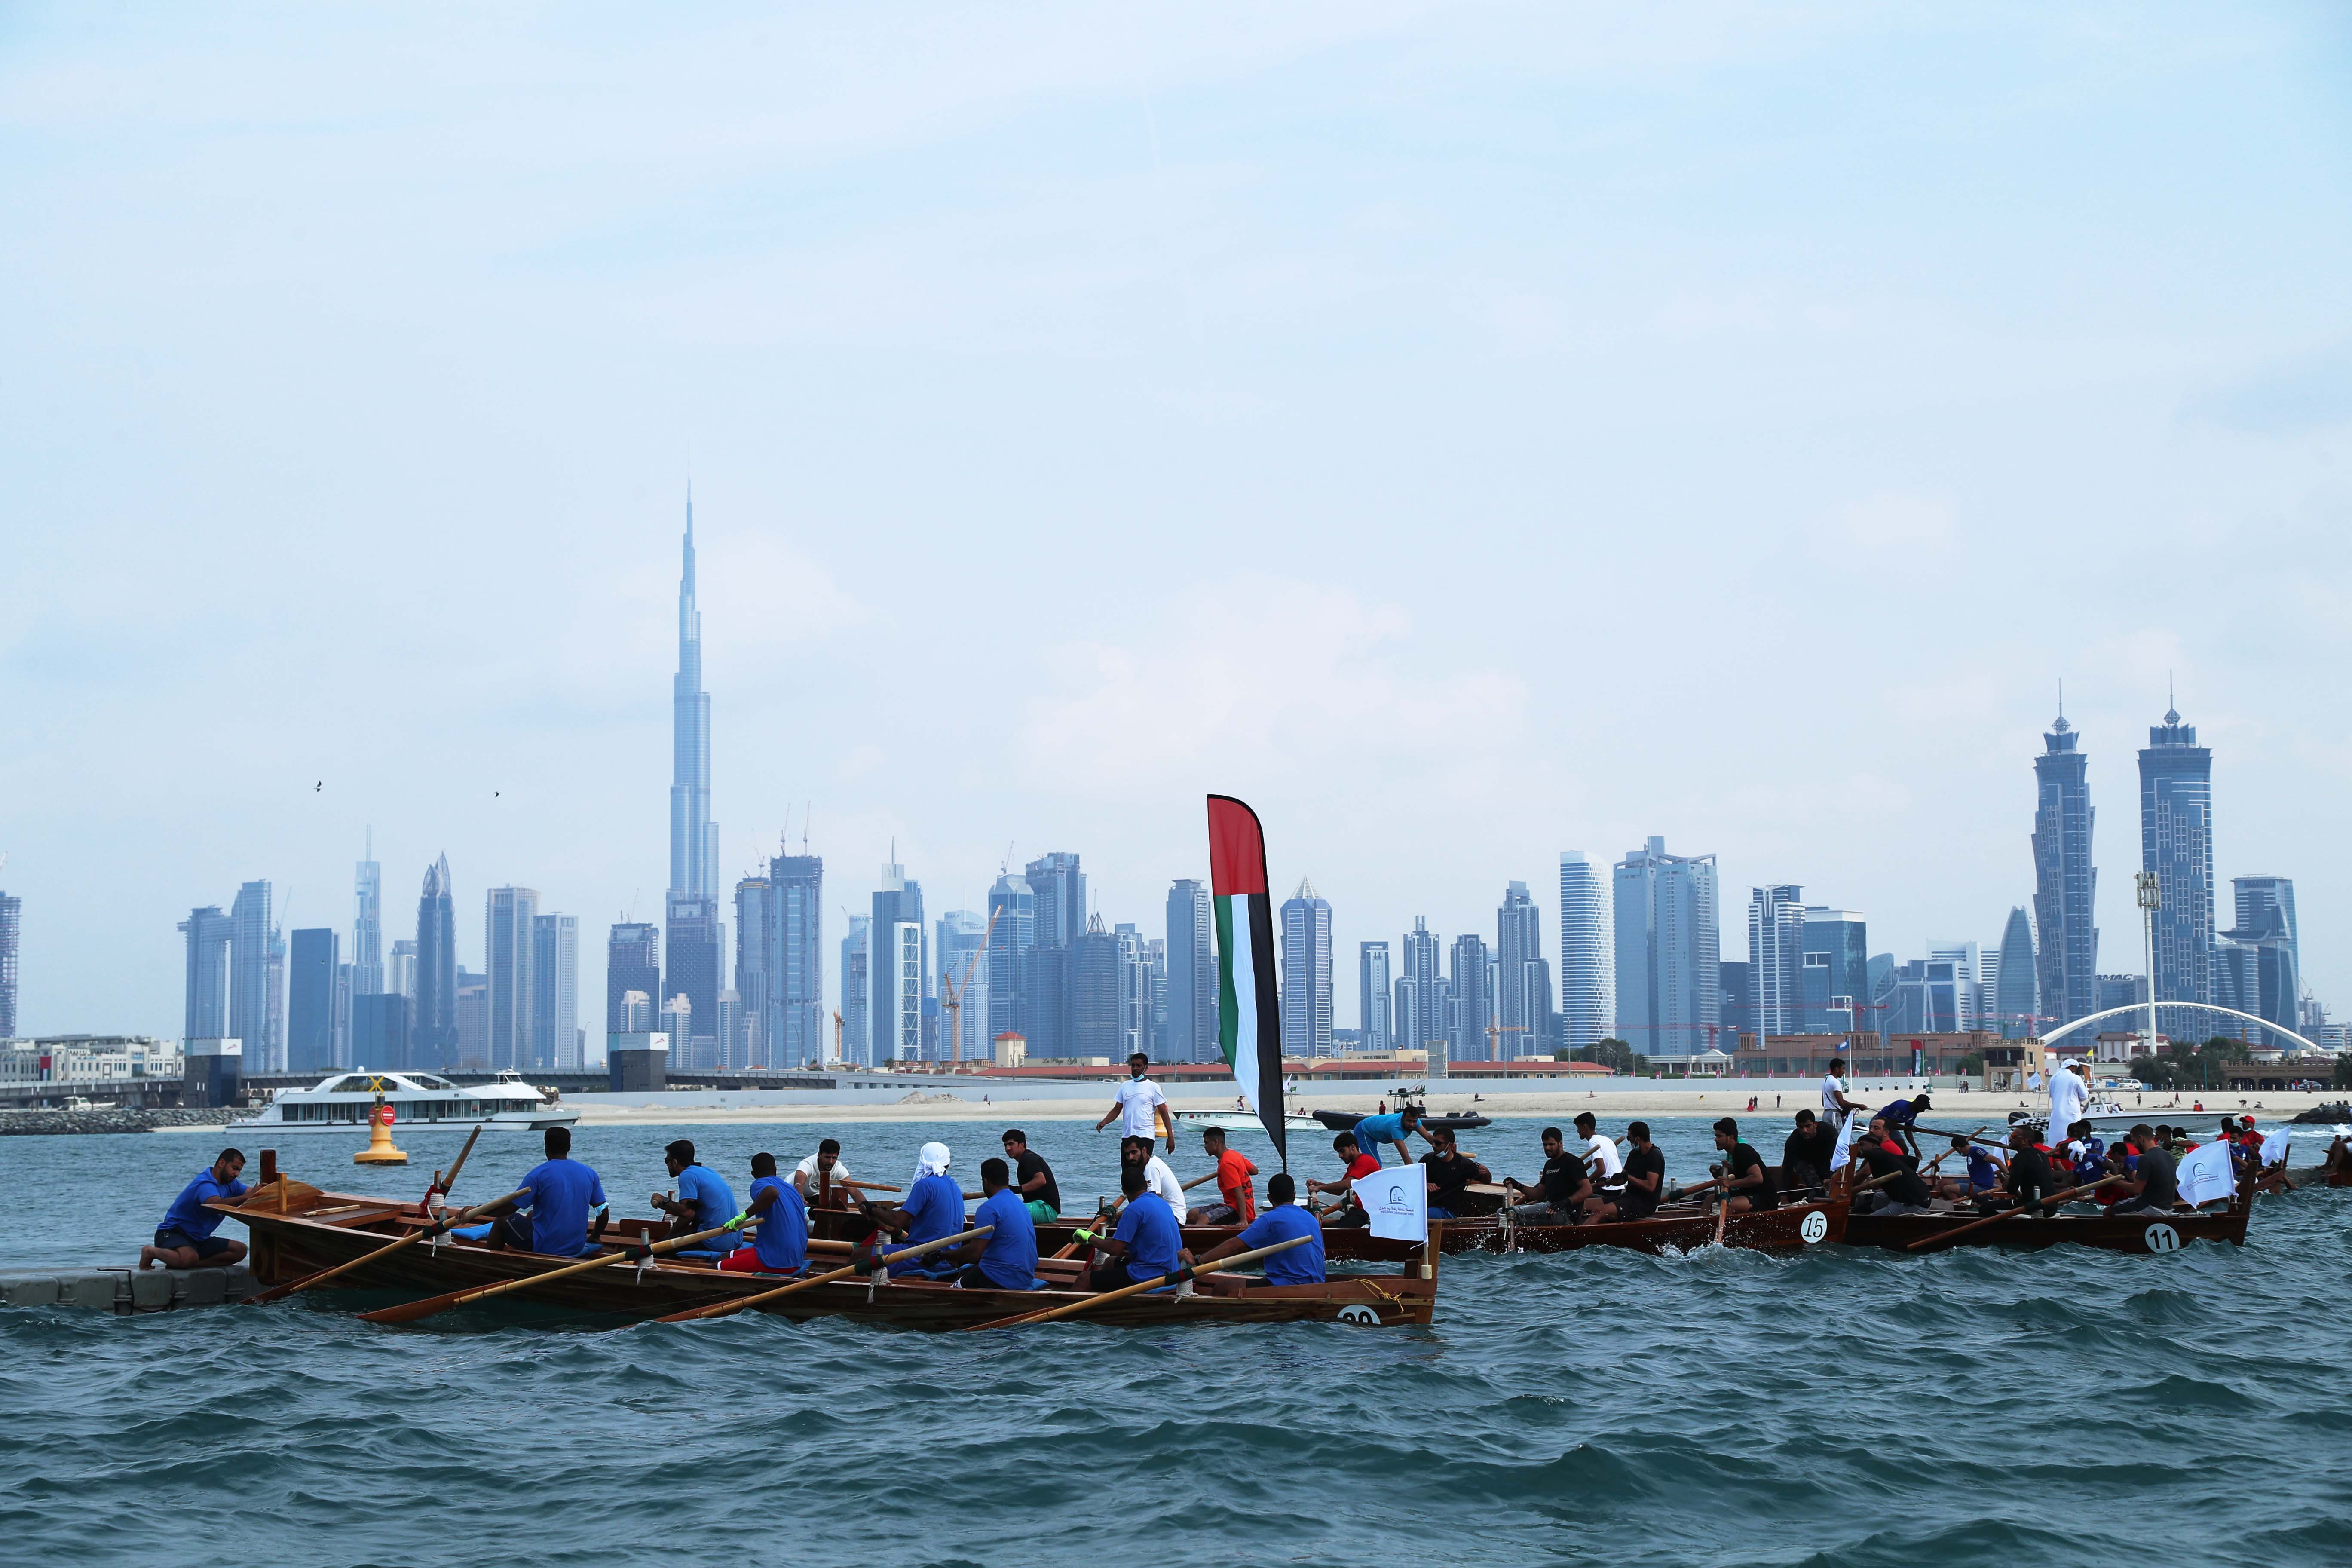 Participants Announcement for the Al Maktoum Cup Traditional Rowing Race